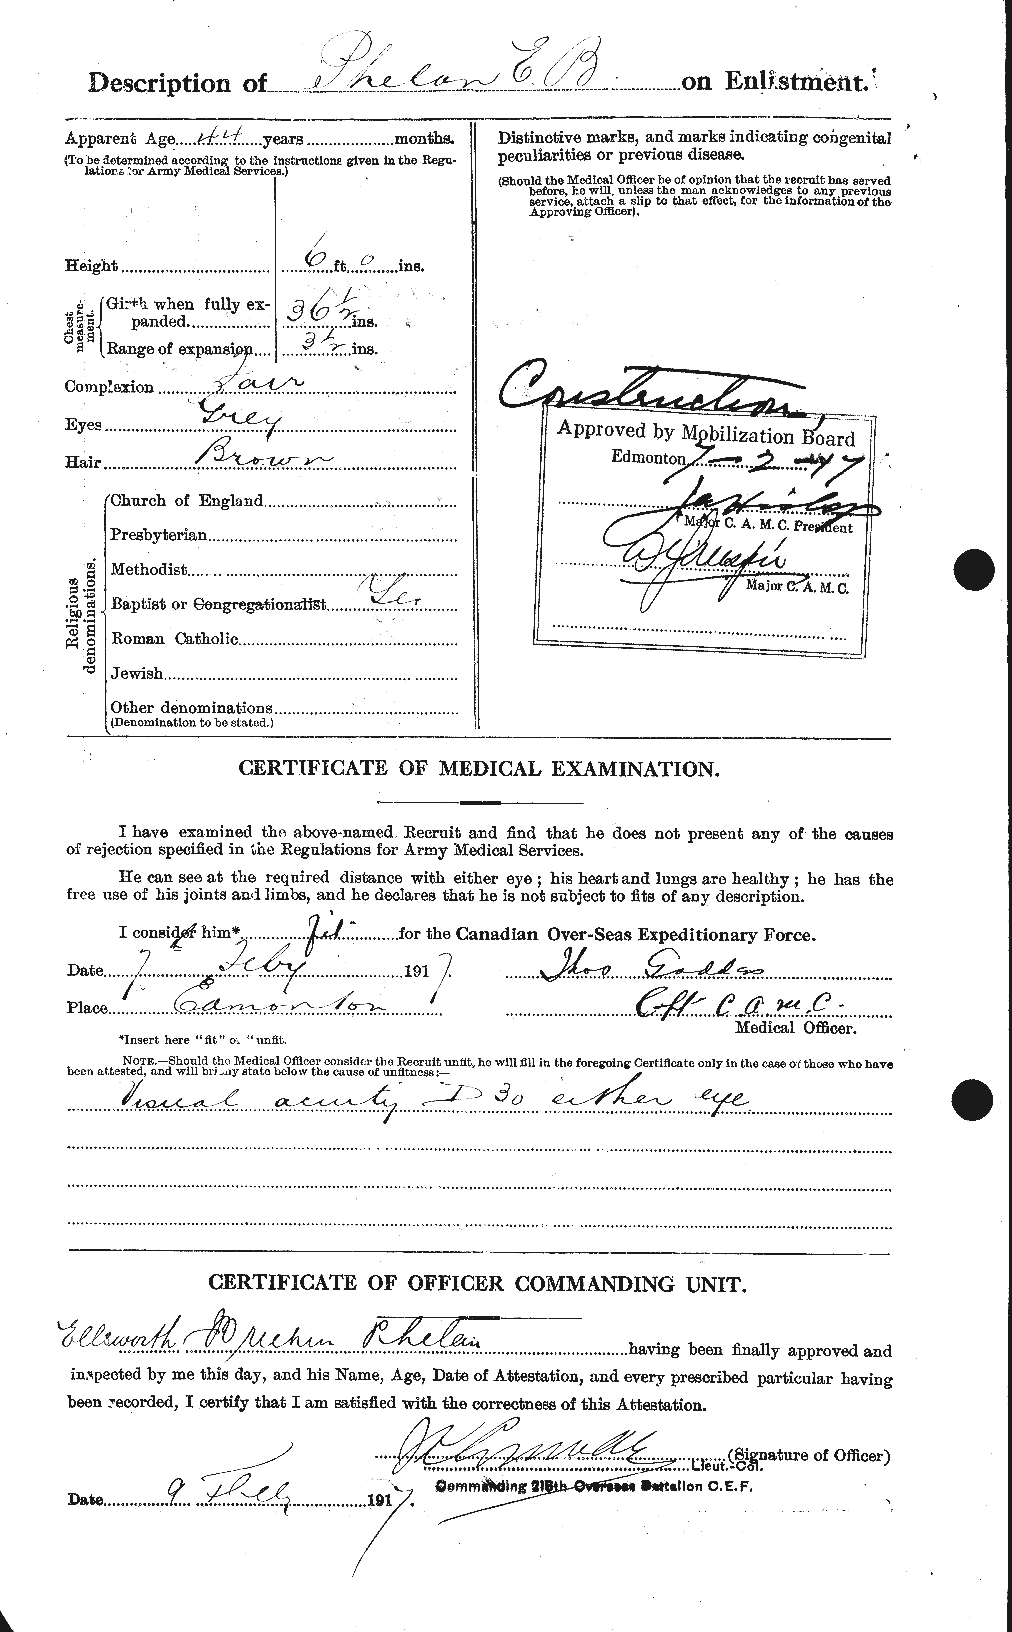 Dossiers du Personnel de la Première Guerre mondiale - CEC 576943b